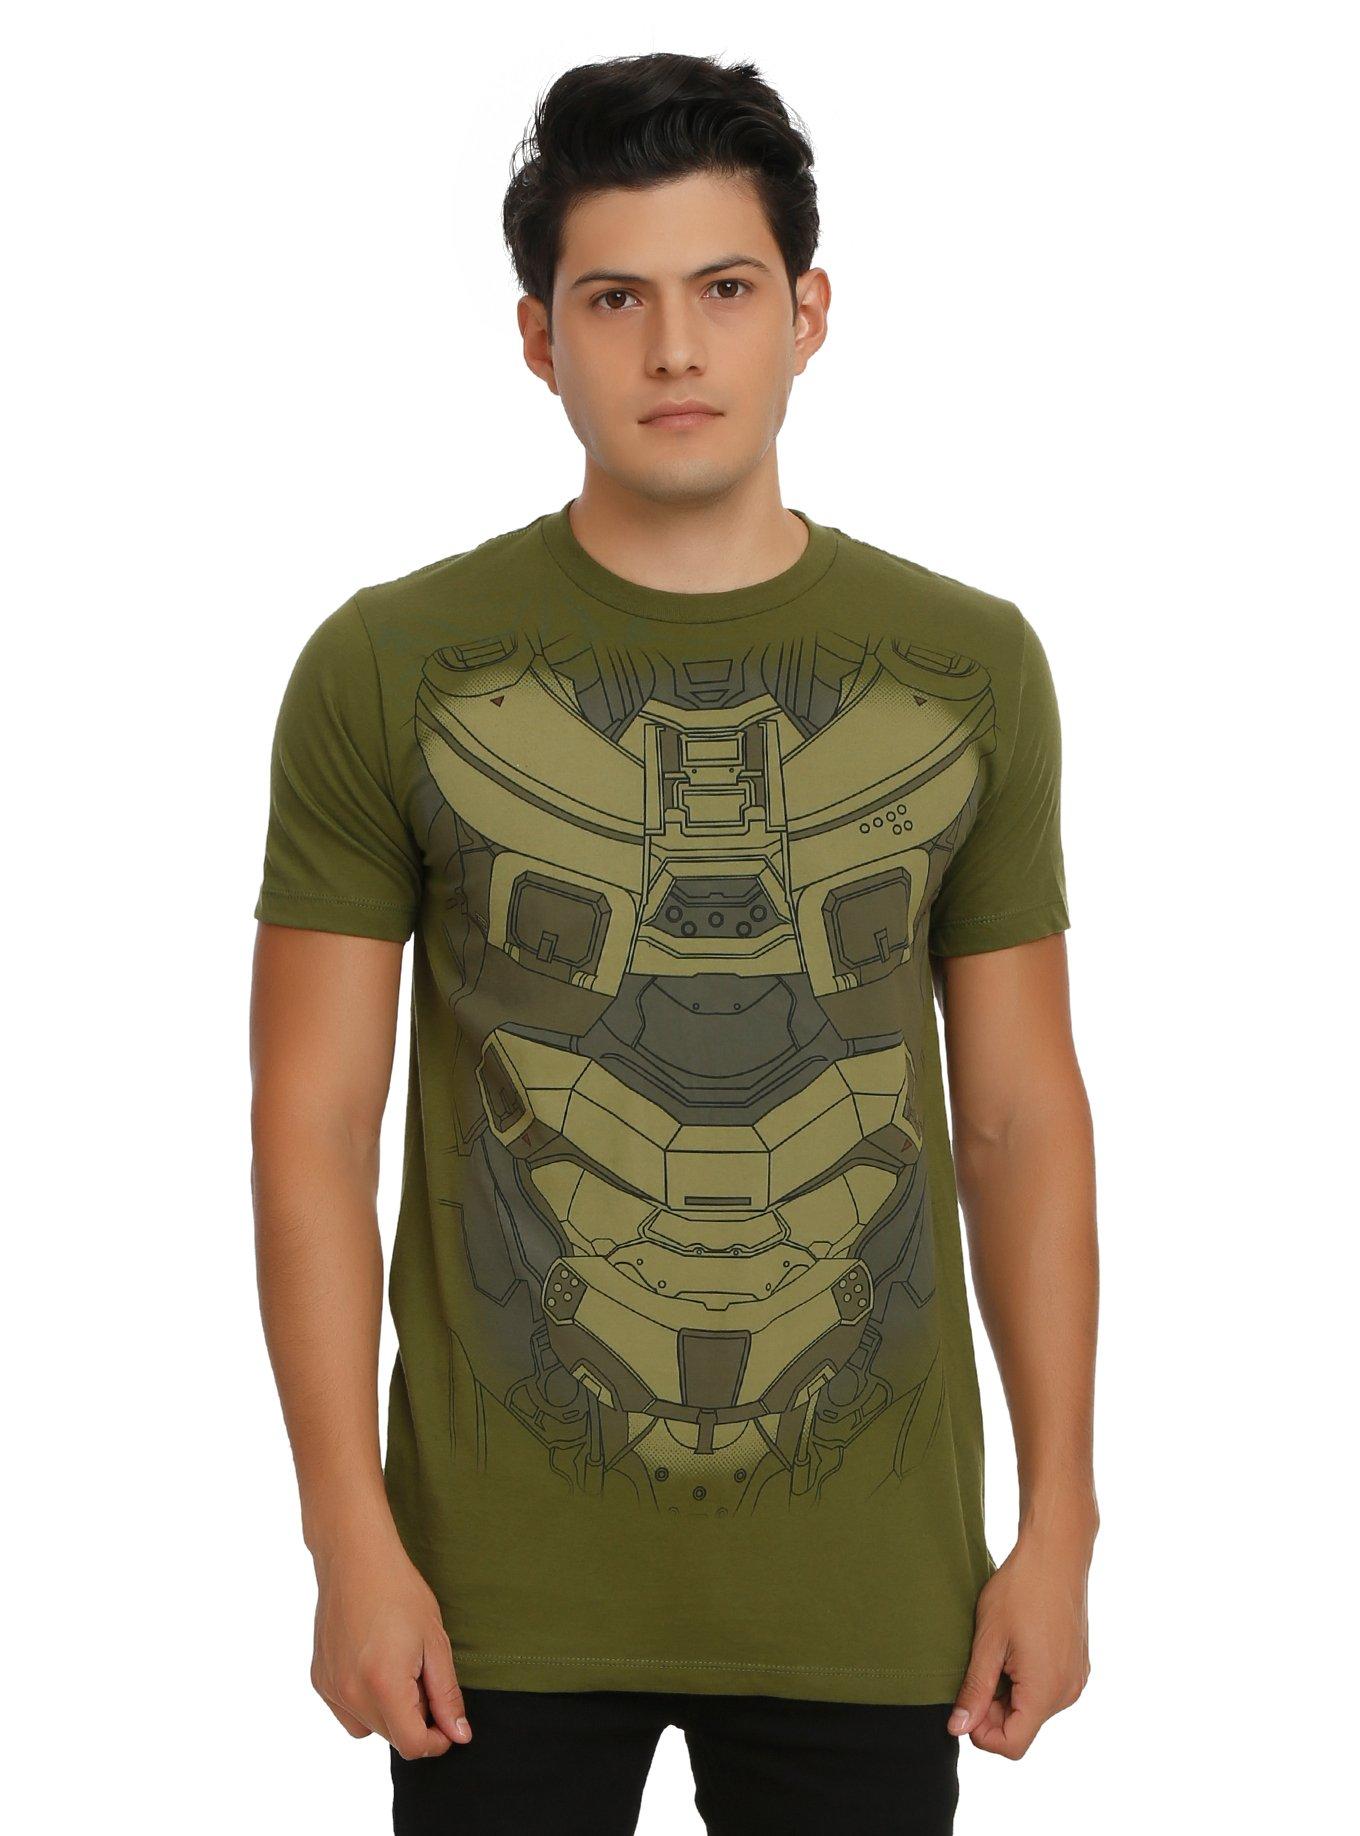 Halo Master Chief Cosplay T-Shirt, GREEN, hi-res